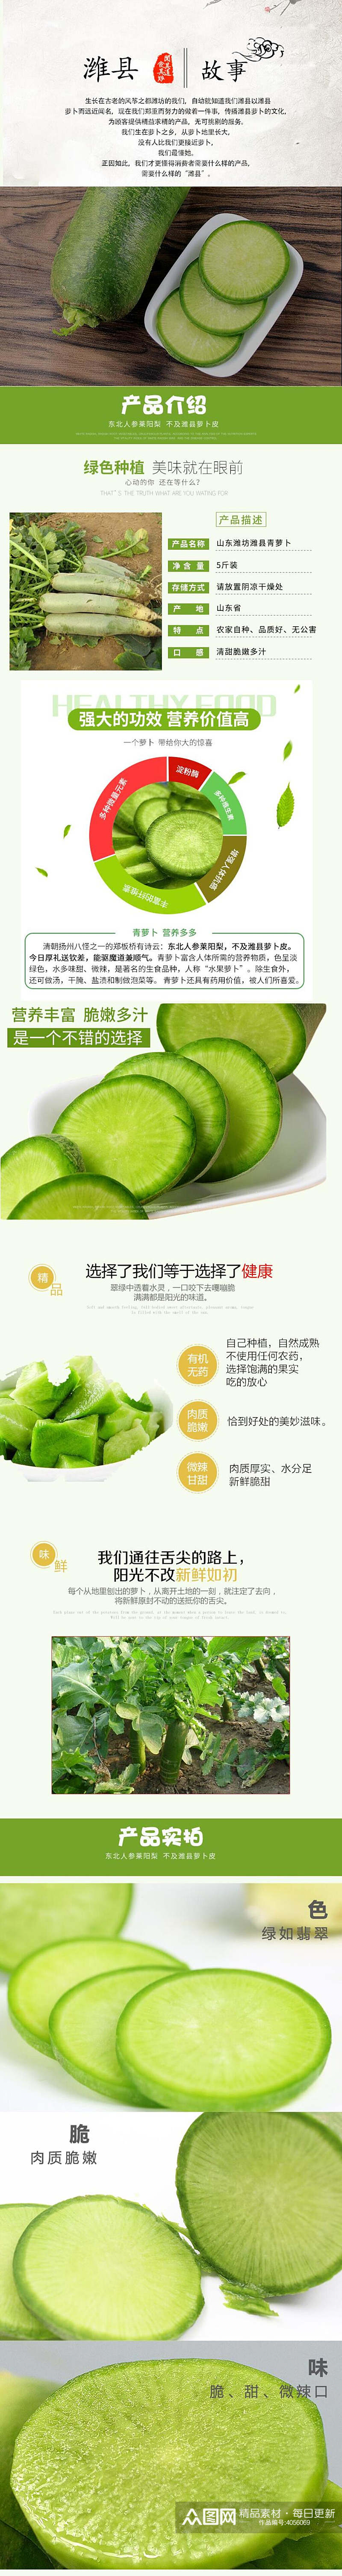 绿色种植蔬菜手机版详情页素材